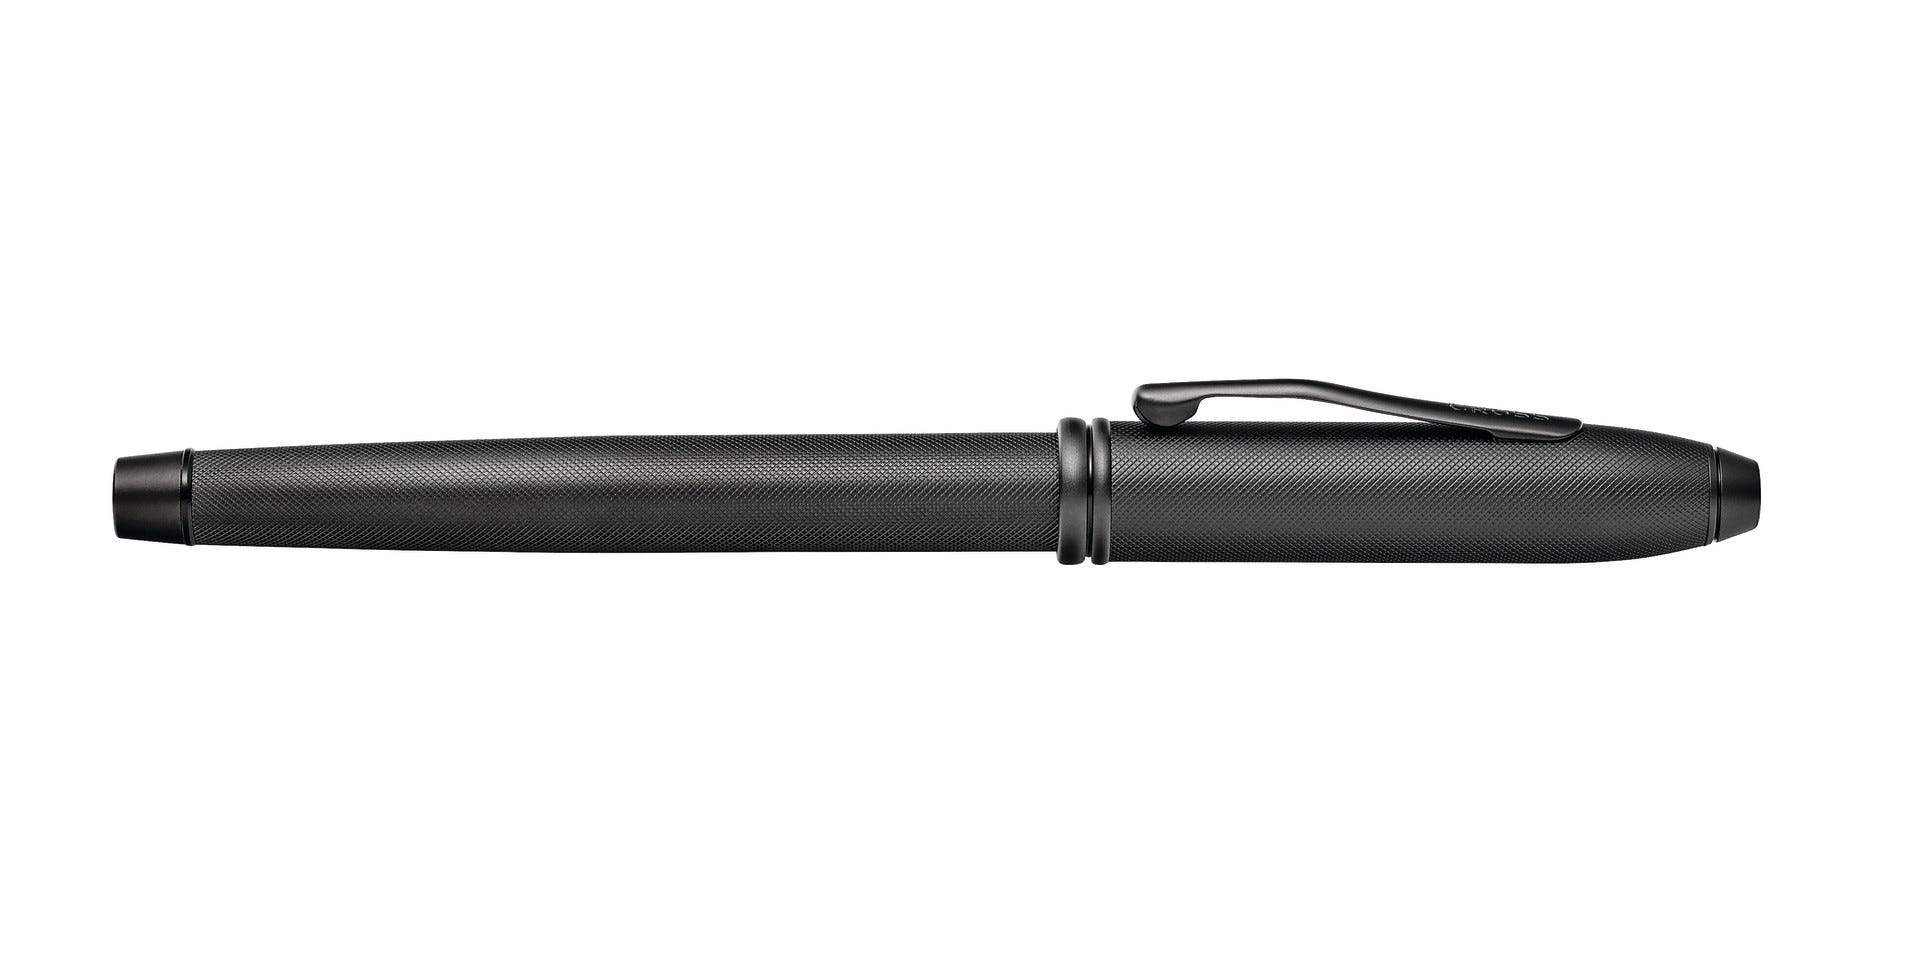 قلم كرو كرو كرول أسود من كروس تاونسند مع قلم ممات بي في دي أبنتس رولينج بول - AT0045-62